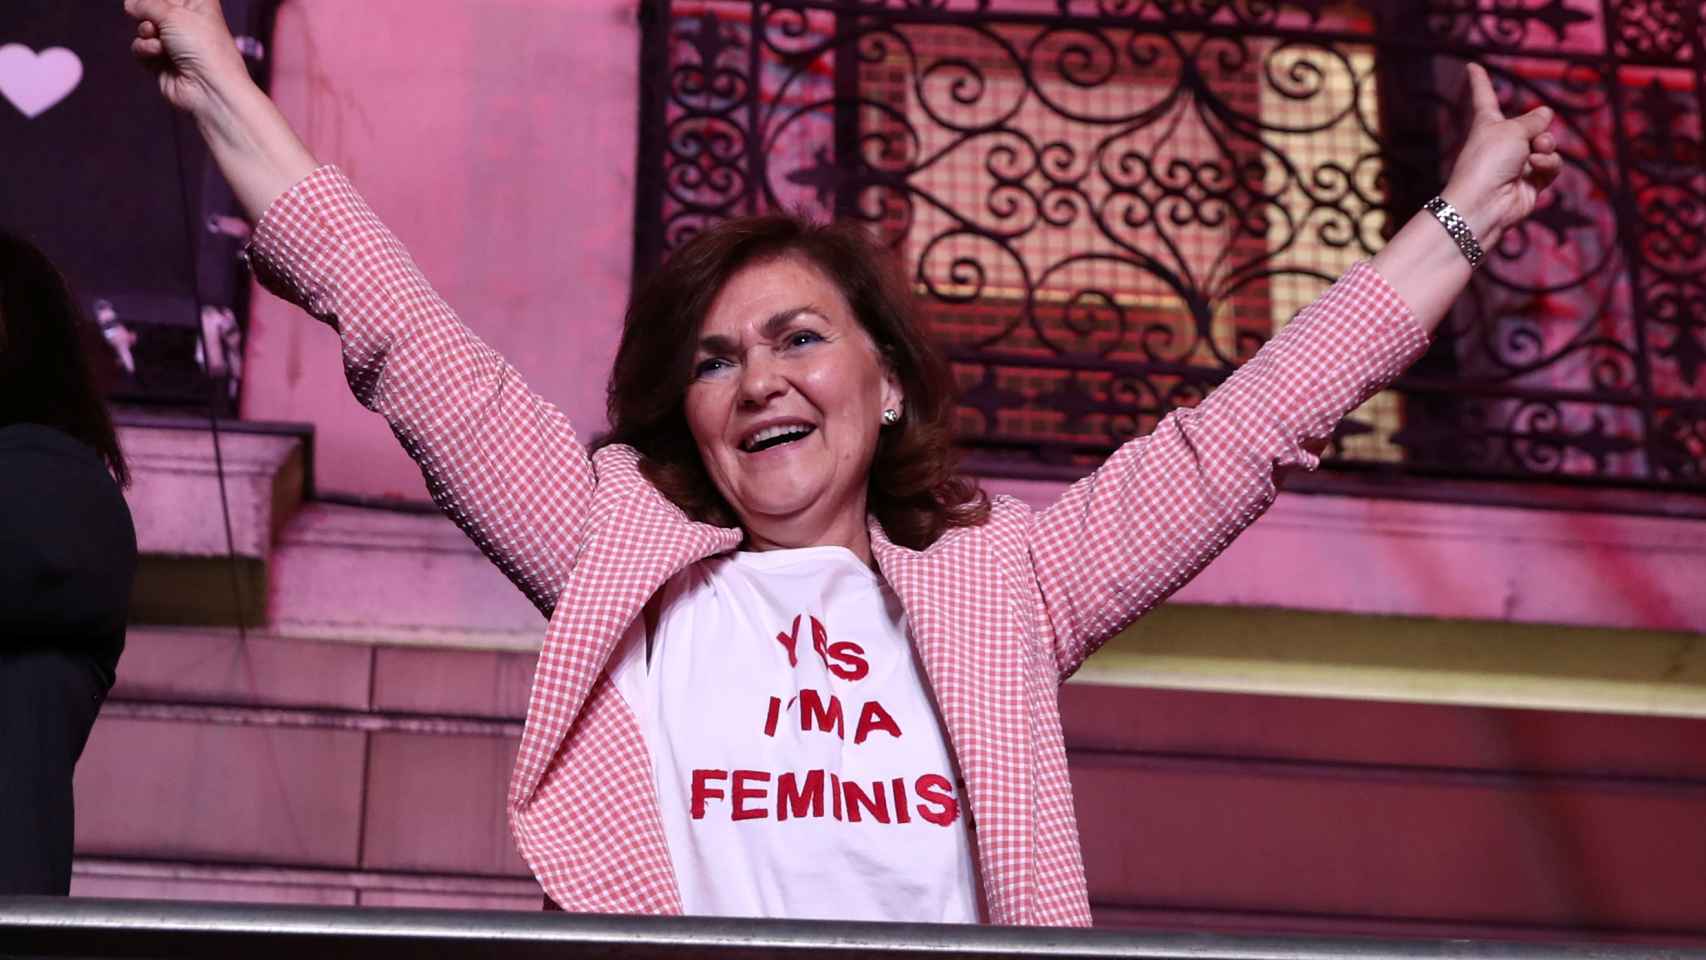 Carmen Calvo tras las elecciones de abril, luciendo una camiseta de Yes, I'm a feminist.